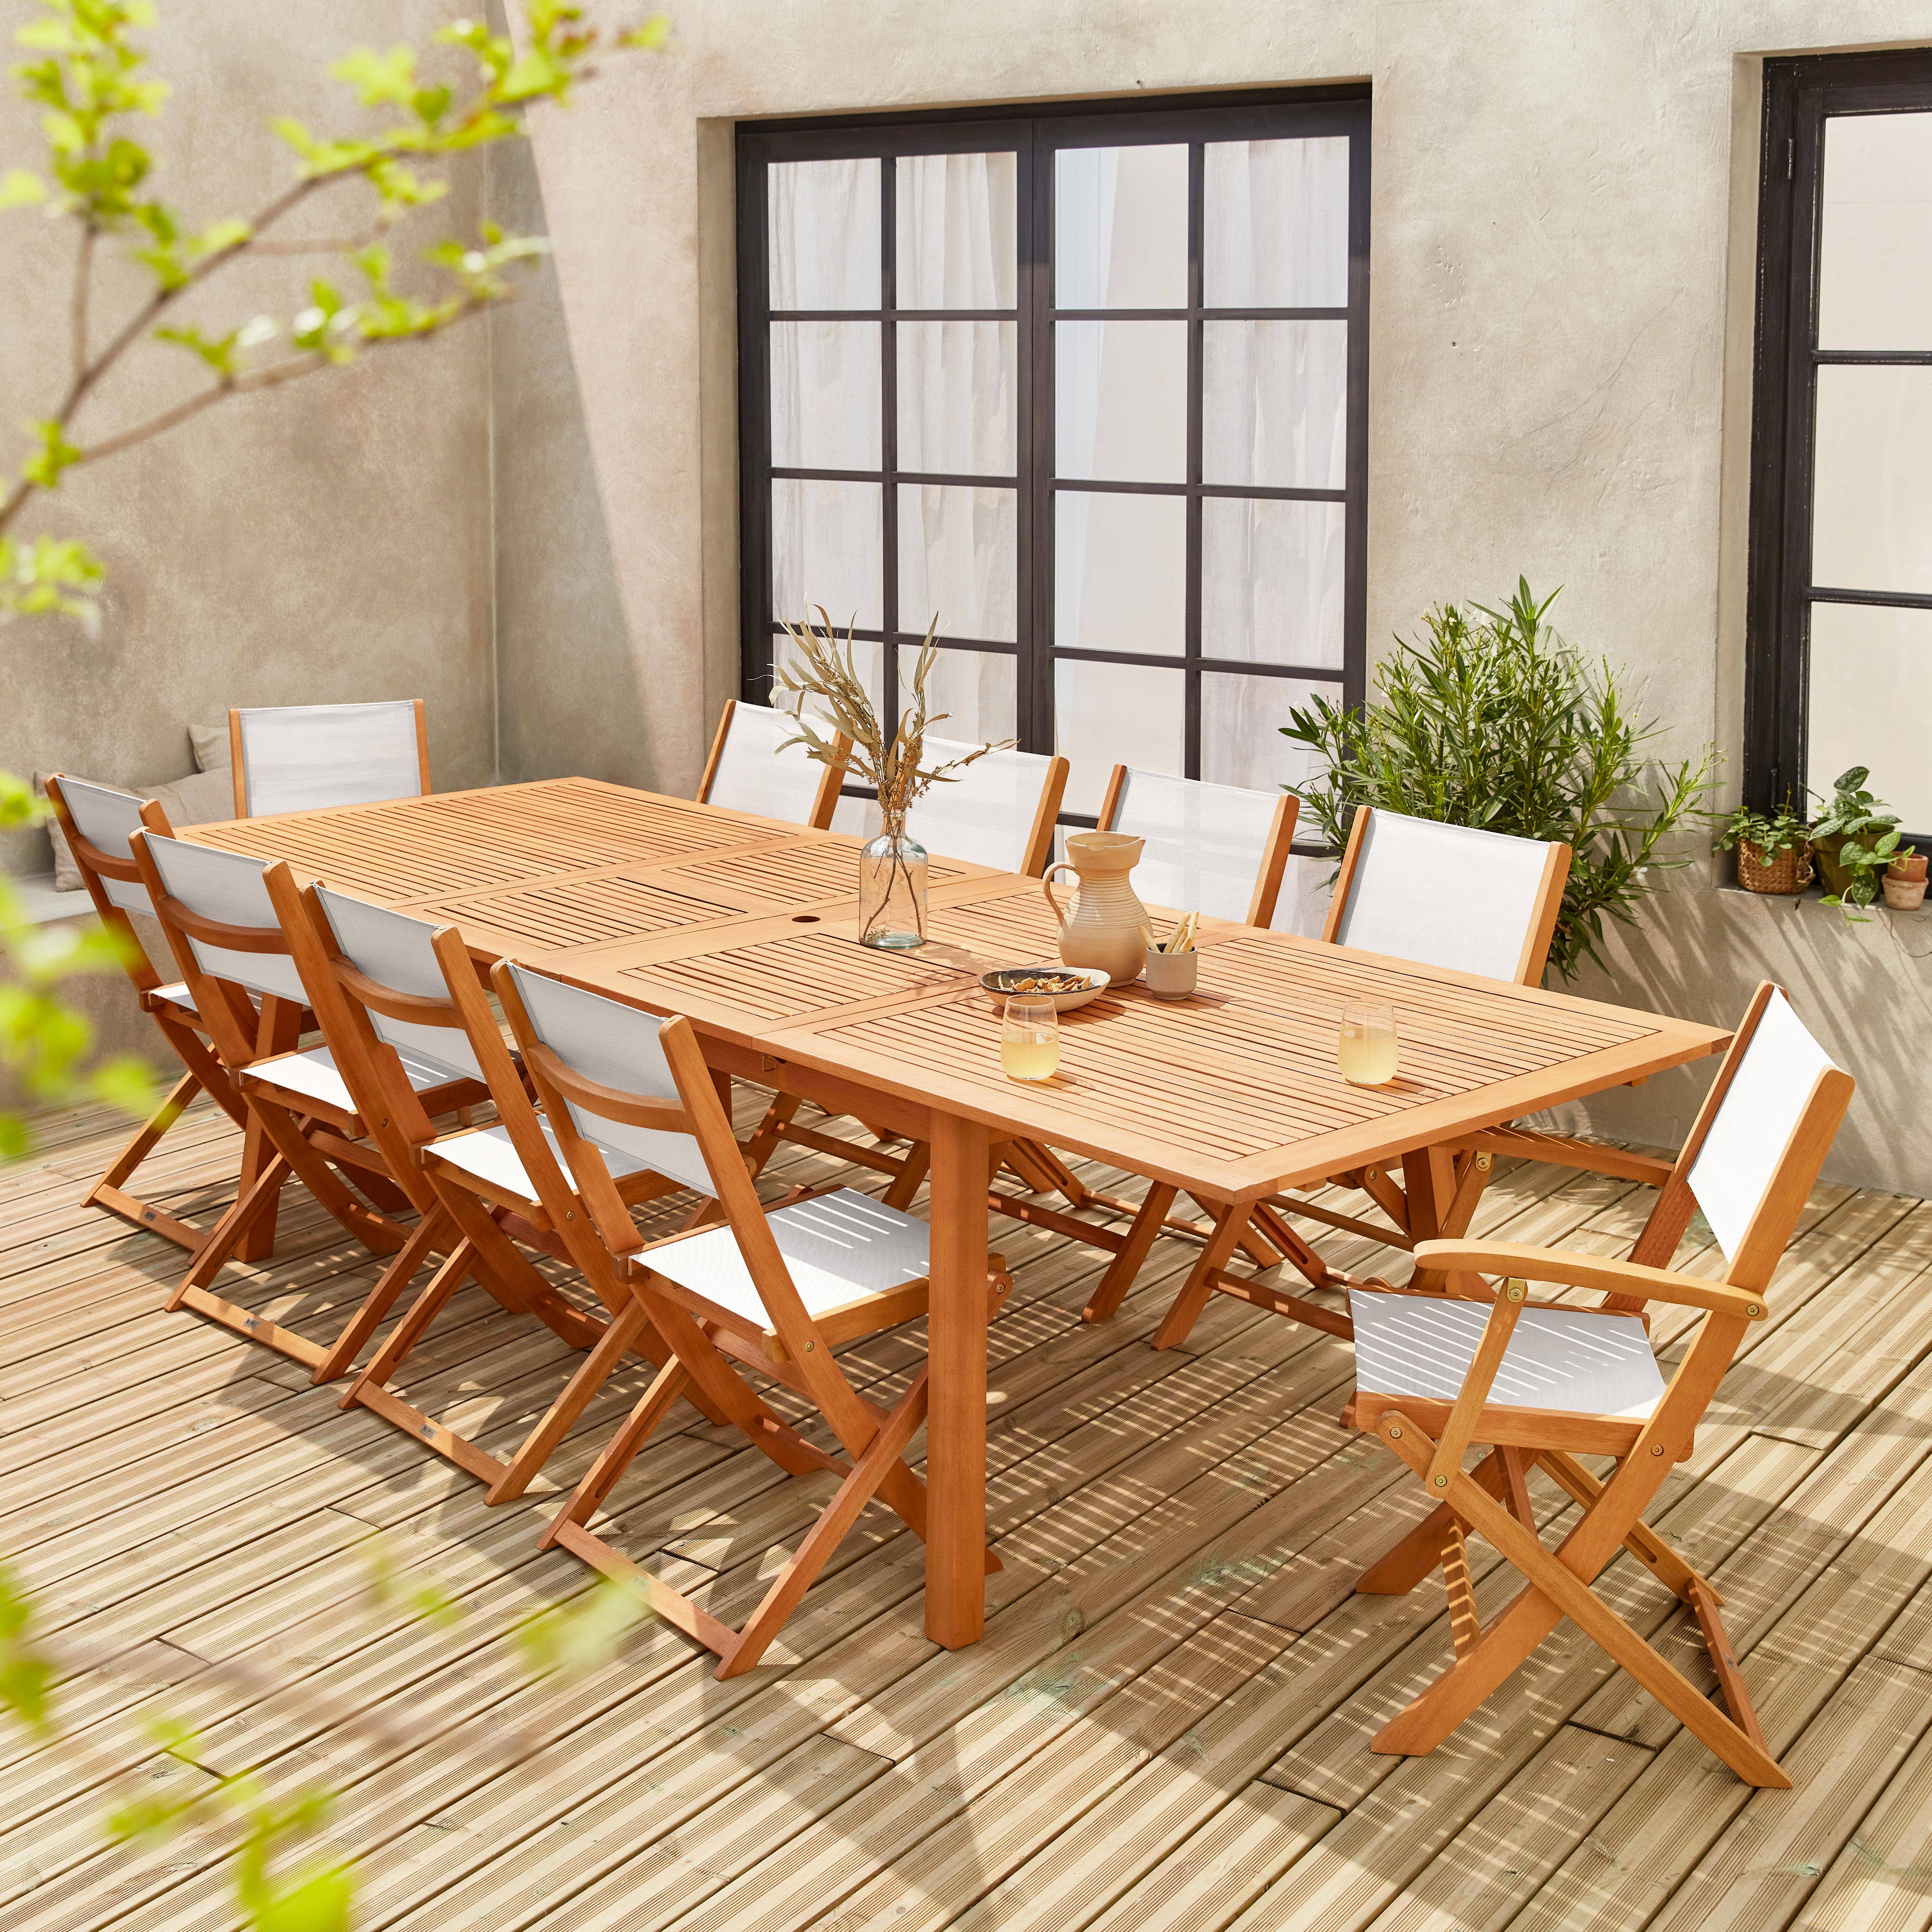 Ausziehbare Gartenmöbel aus Holz - Almeria Tisch 200/250/300cm mit 2 Verlängerungen, 2 Sesseln und 8 Stühlen, aus geöltem FSC Eukalyptusholz und weißem Textilene Photo2